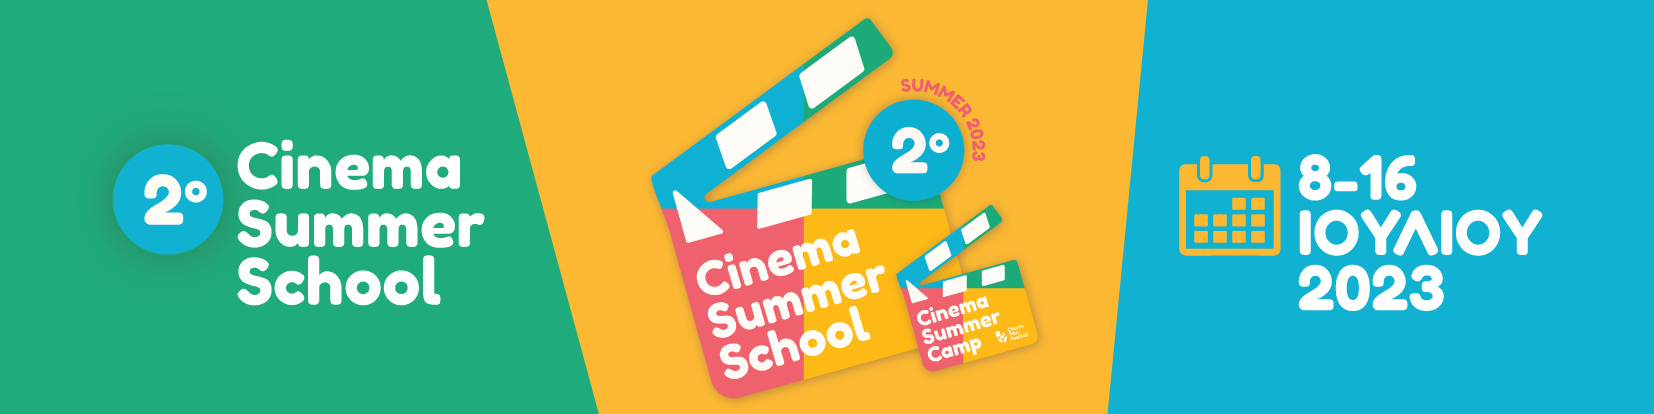  8-16 Ιουλίου 2023 στο Μεσογειακό Αγρονομικό Ινστιτούτο Χανίων στο πλαίσιο του «Θερινού Σχολείου Κινηματογράφου» / «CinemaSummerCamp» 